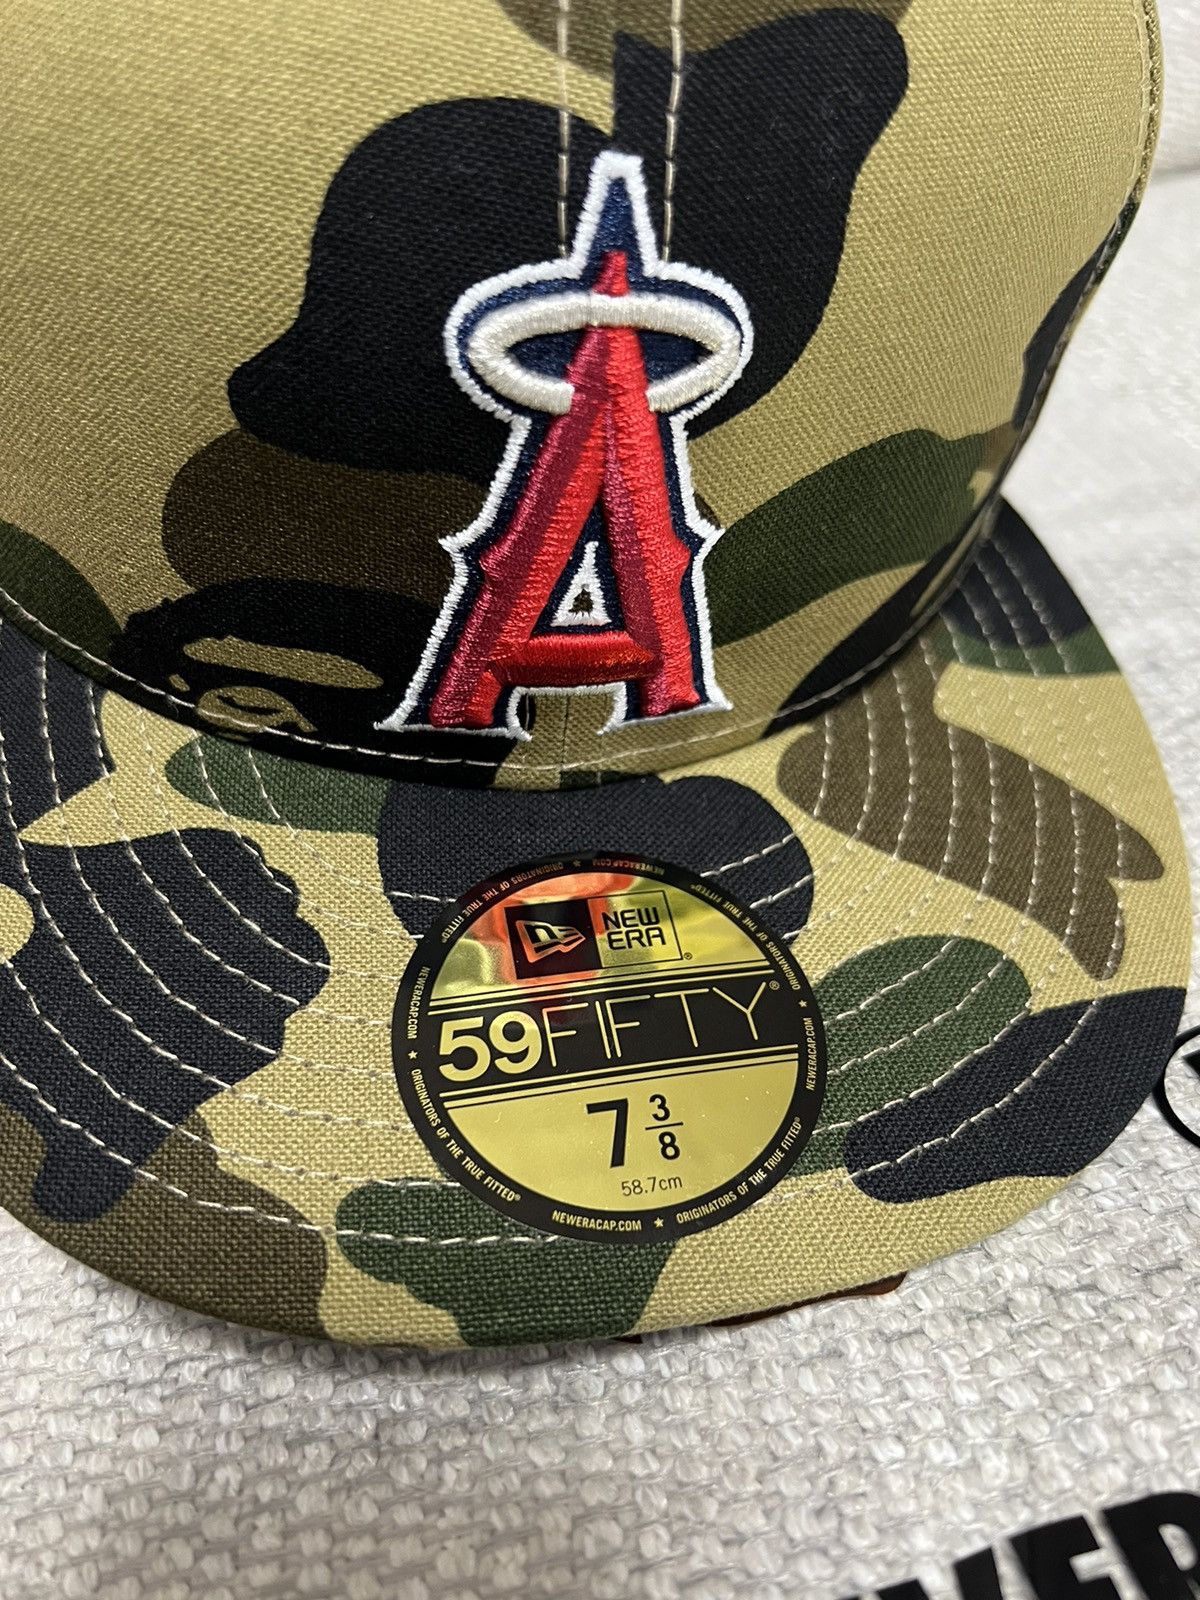 Bape BAPE X MLB X NEW ERA Japan exclusive Angels CAP | Grailed